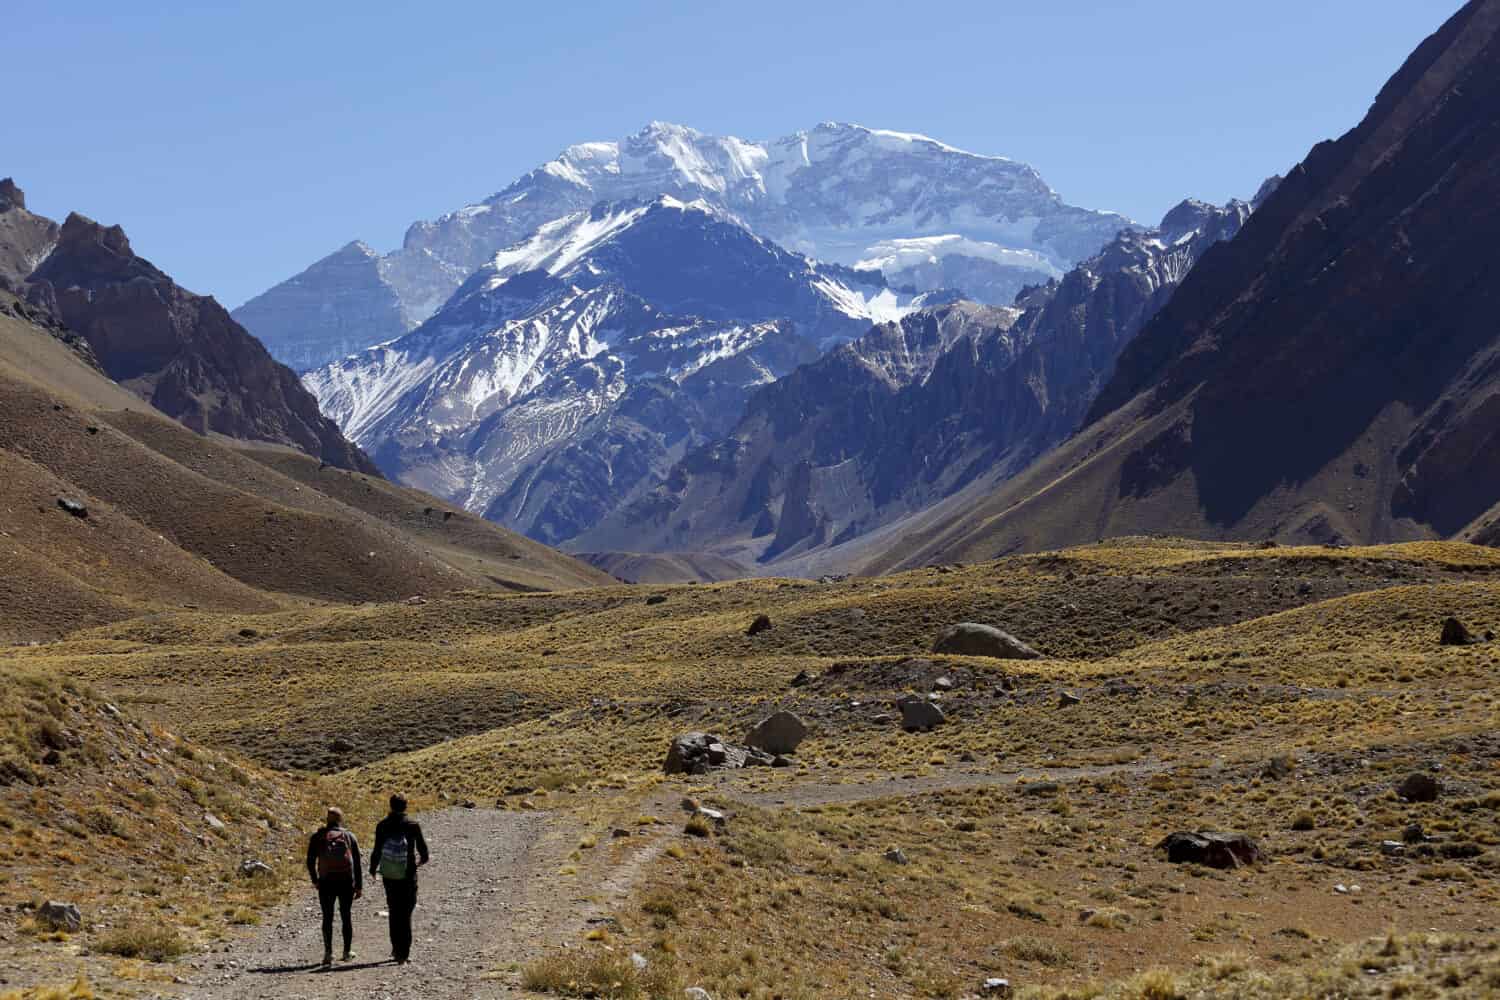 Aconcagua, la montagna più alta delle Americhe con i suoi 6.960 metri, situata nella catena montuosa delle Ande a Mendoza, Argentina.